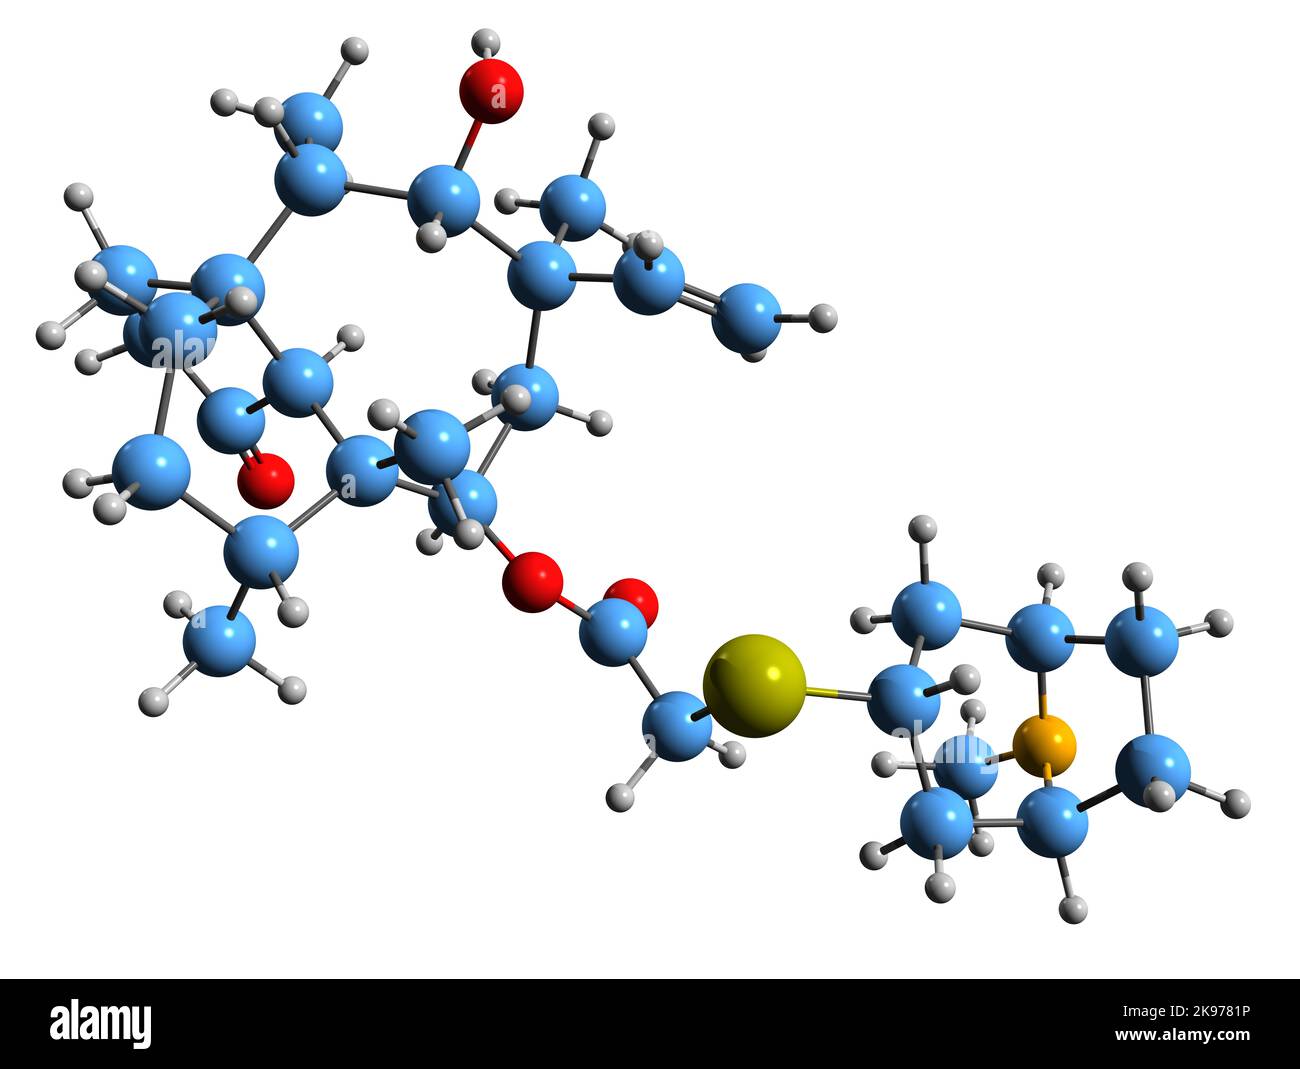 3D Bild der Skelettformel von Retapamulin - molekularchemische Struktur eines topischen Antibiotikums, isoliert auf weißem Hintergrund Stockfoto